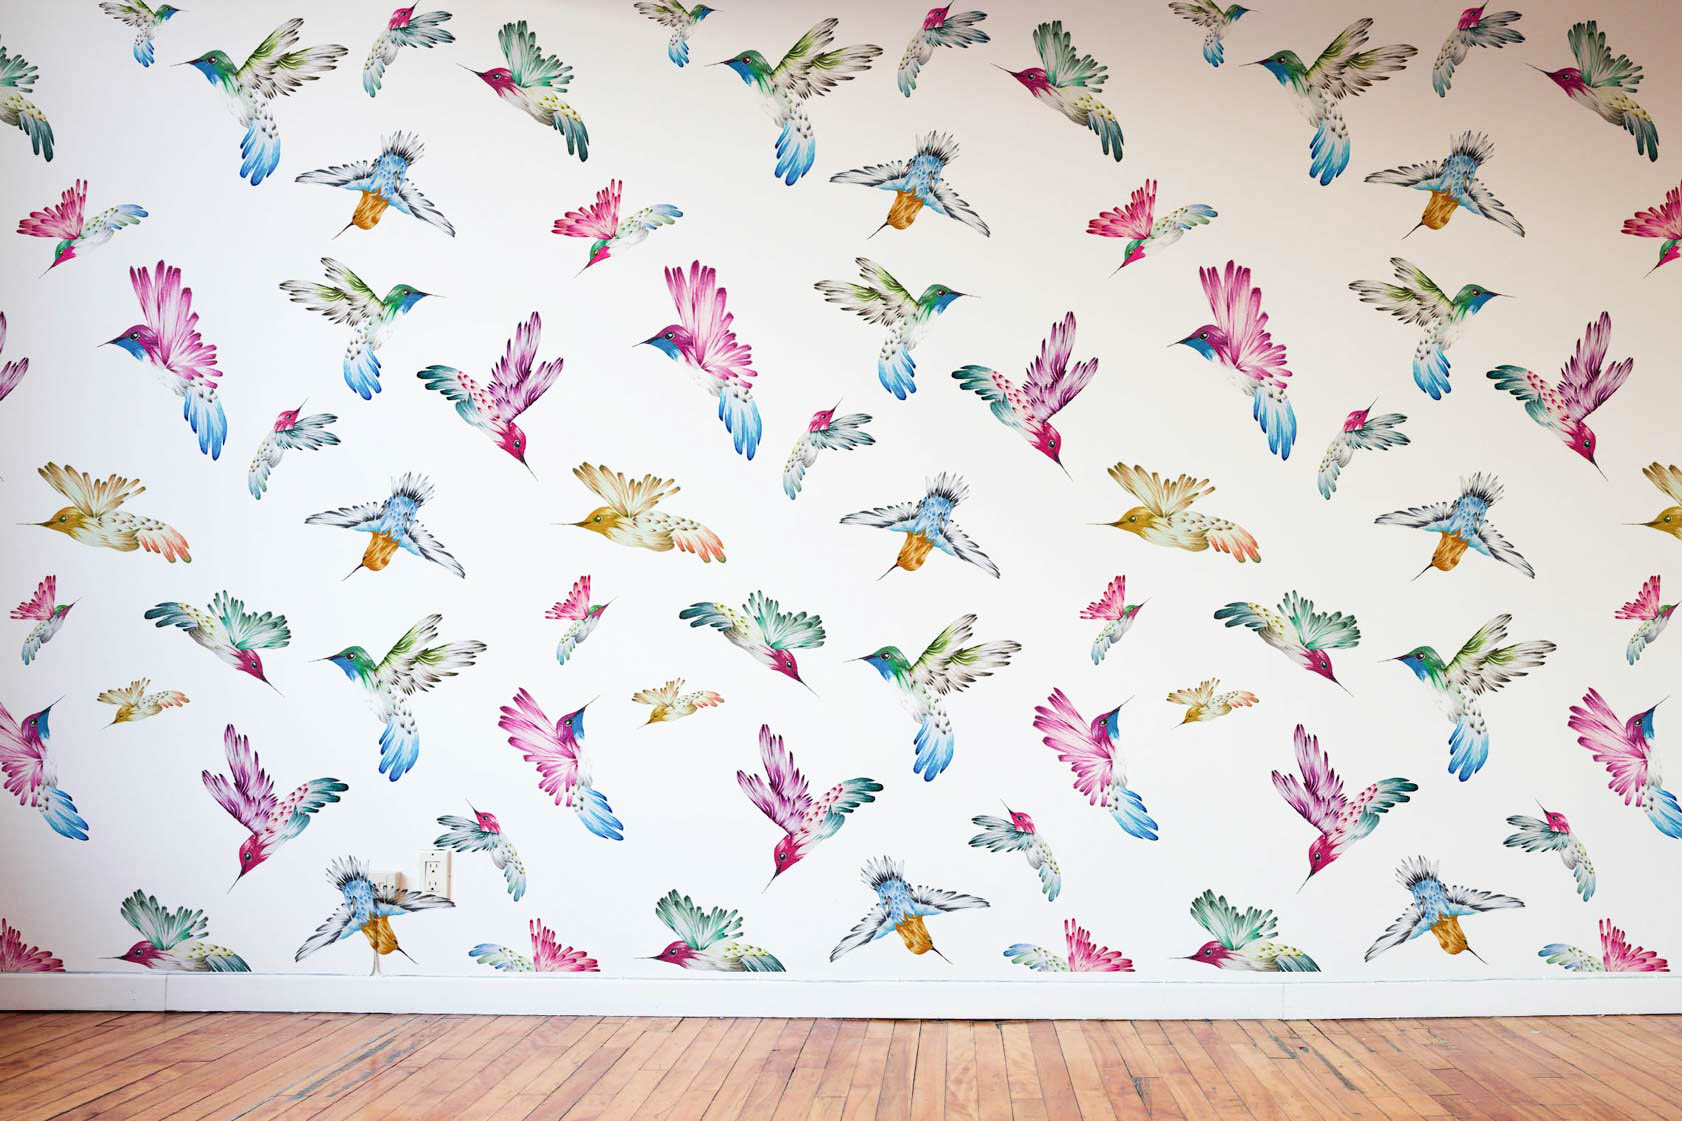 Kate Thornley-Hall bespoke Birdie wallpaper